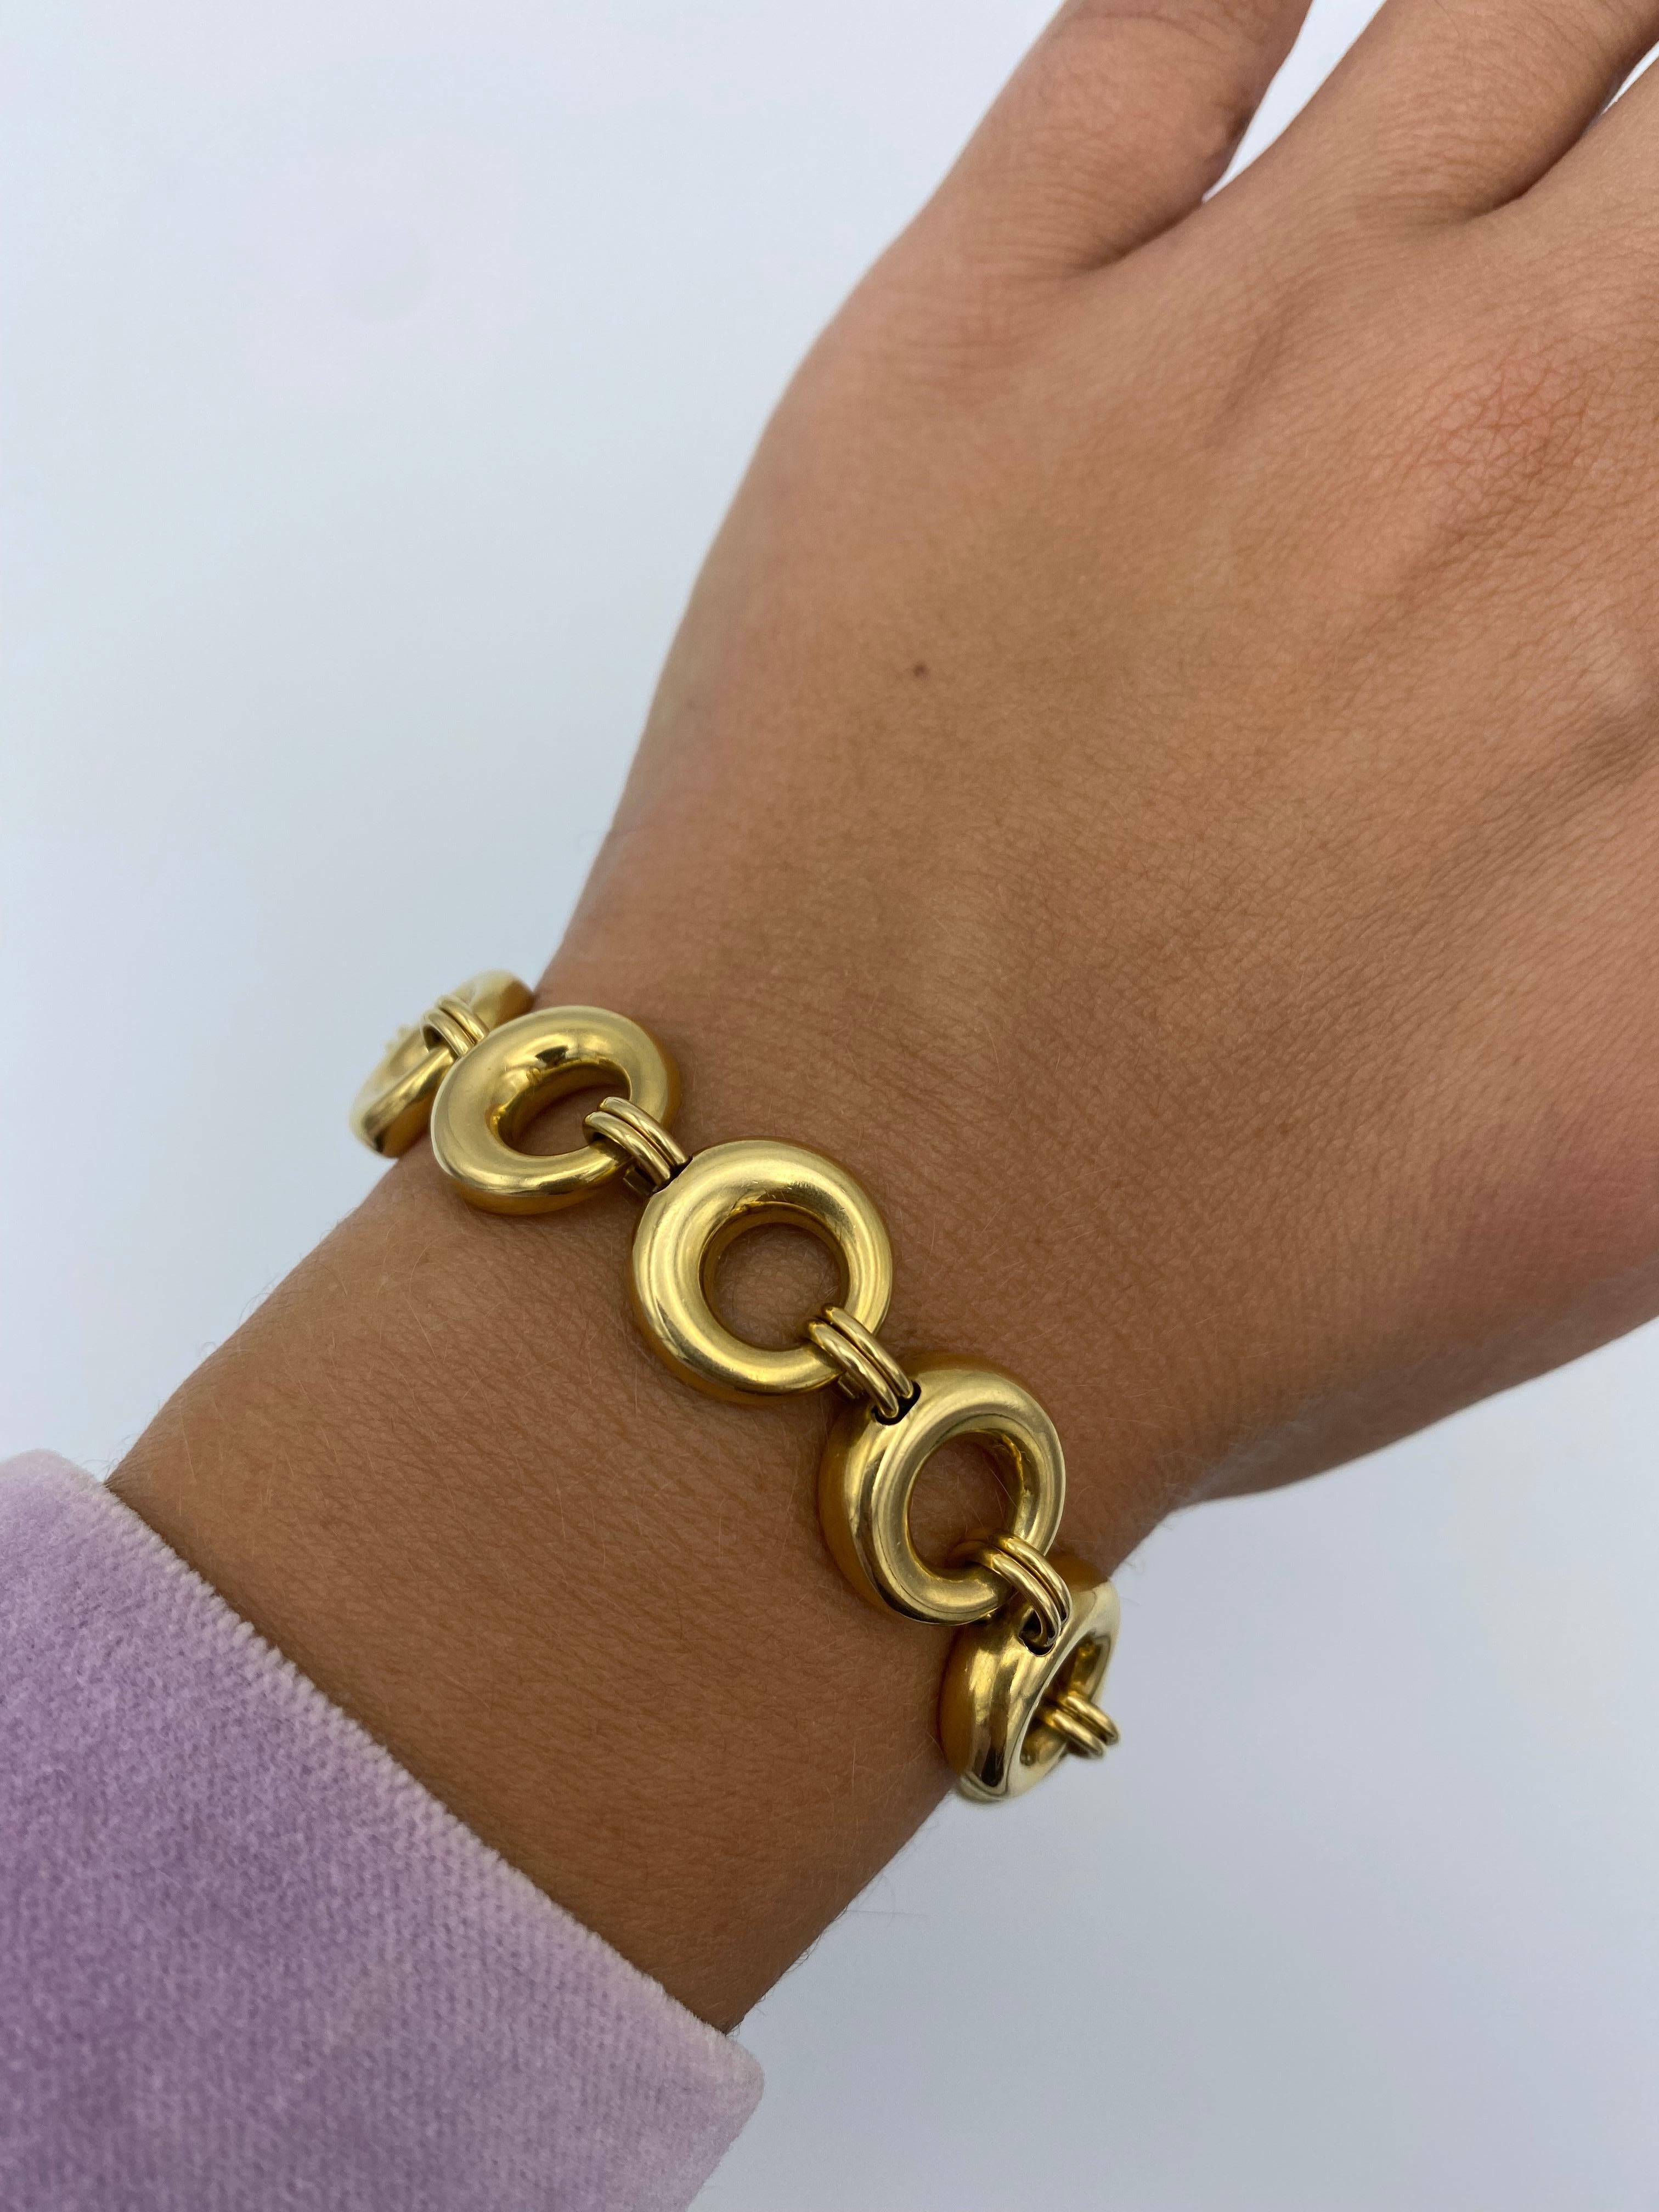 Vintage Chaumet Paris Yellow Gold Link Bracelet and Necklace Set For Sale 3